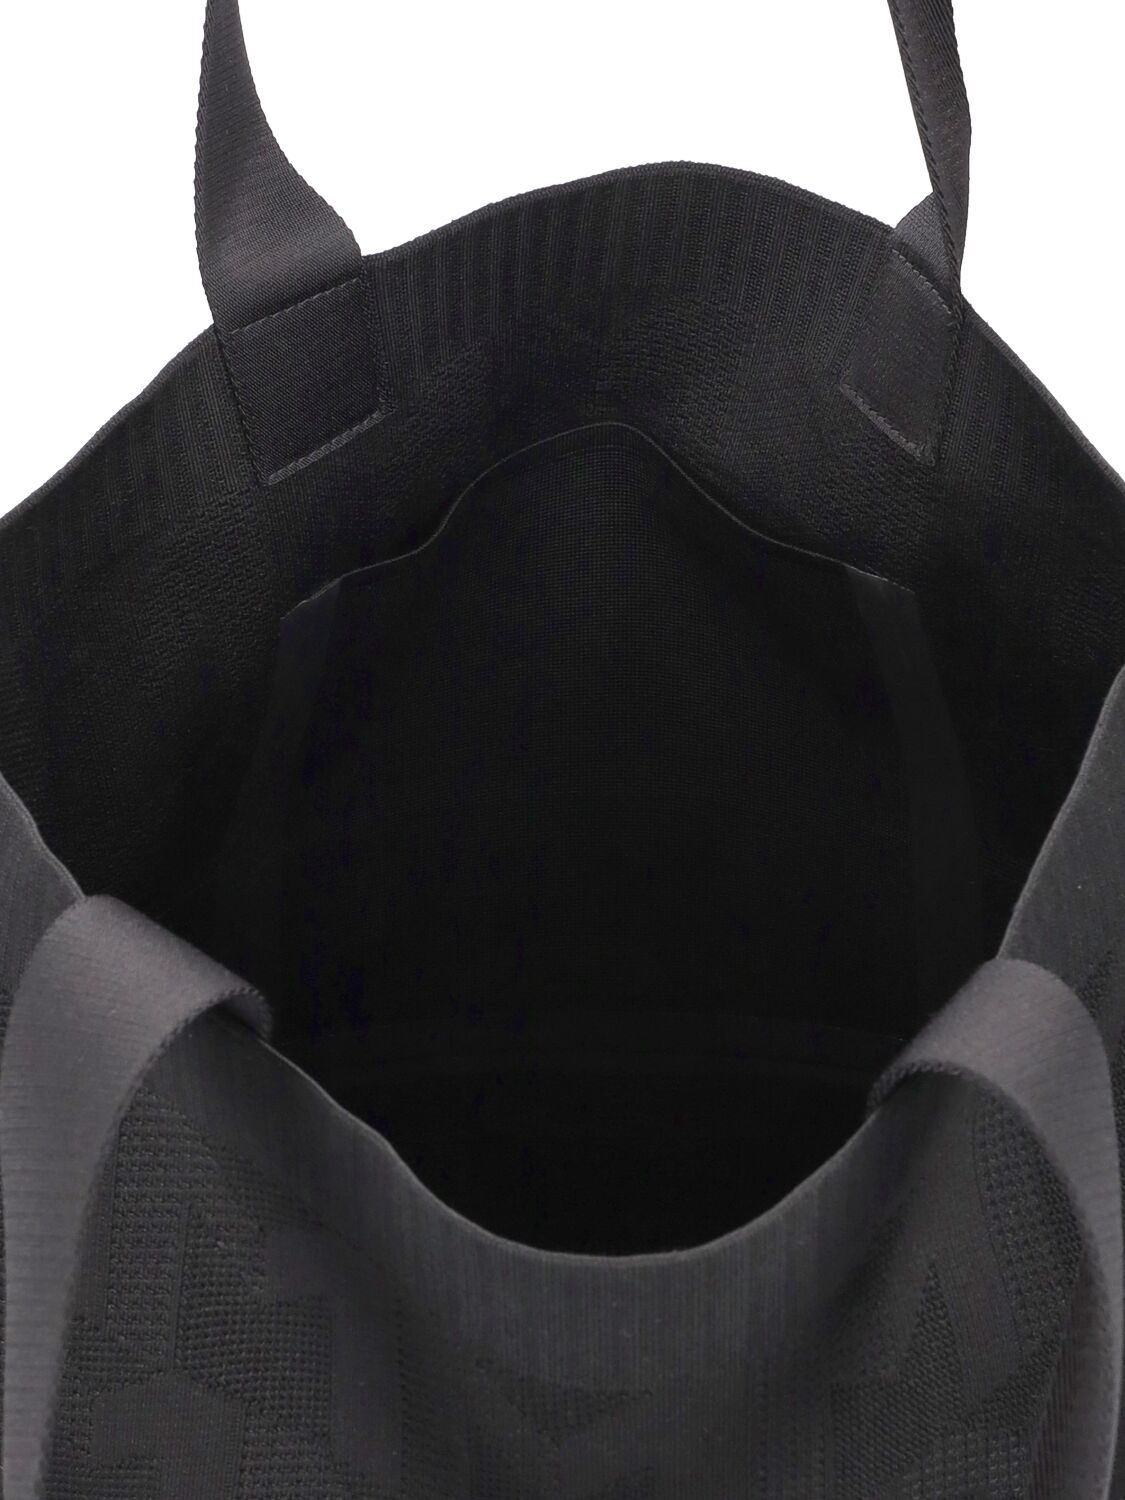 Shop Moncler Tech Knit Tote Bag In Black